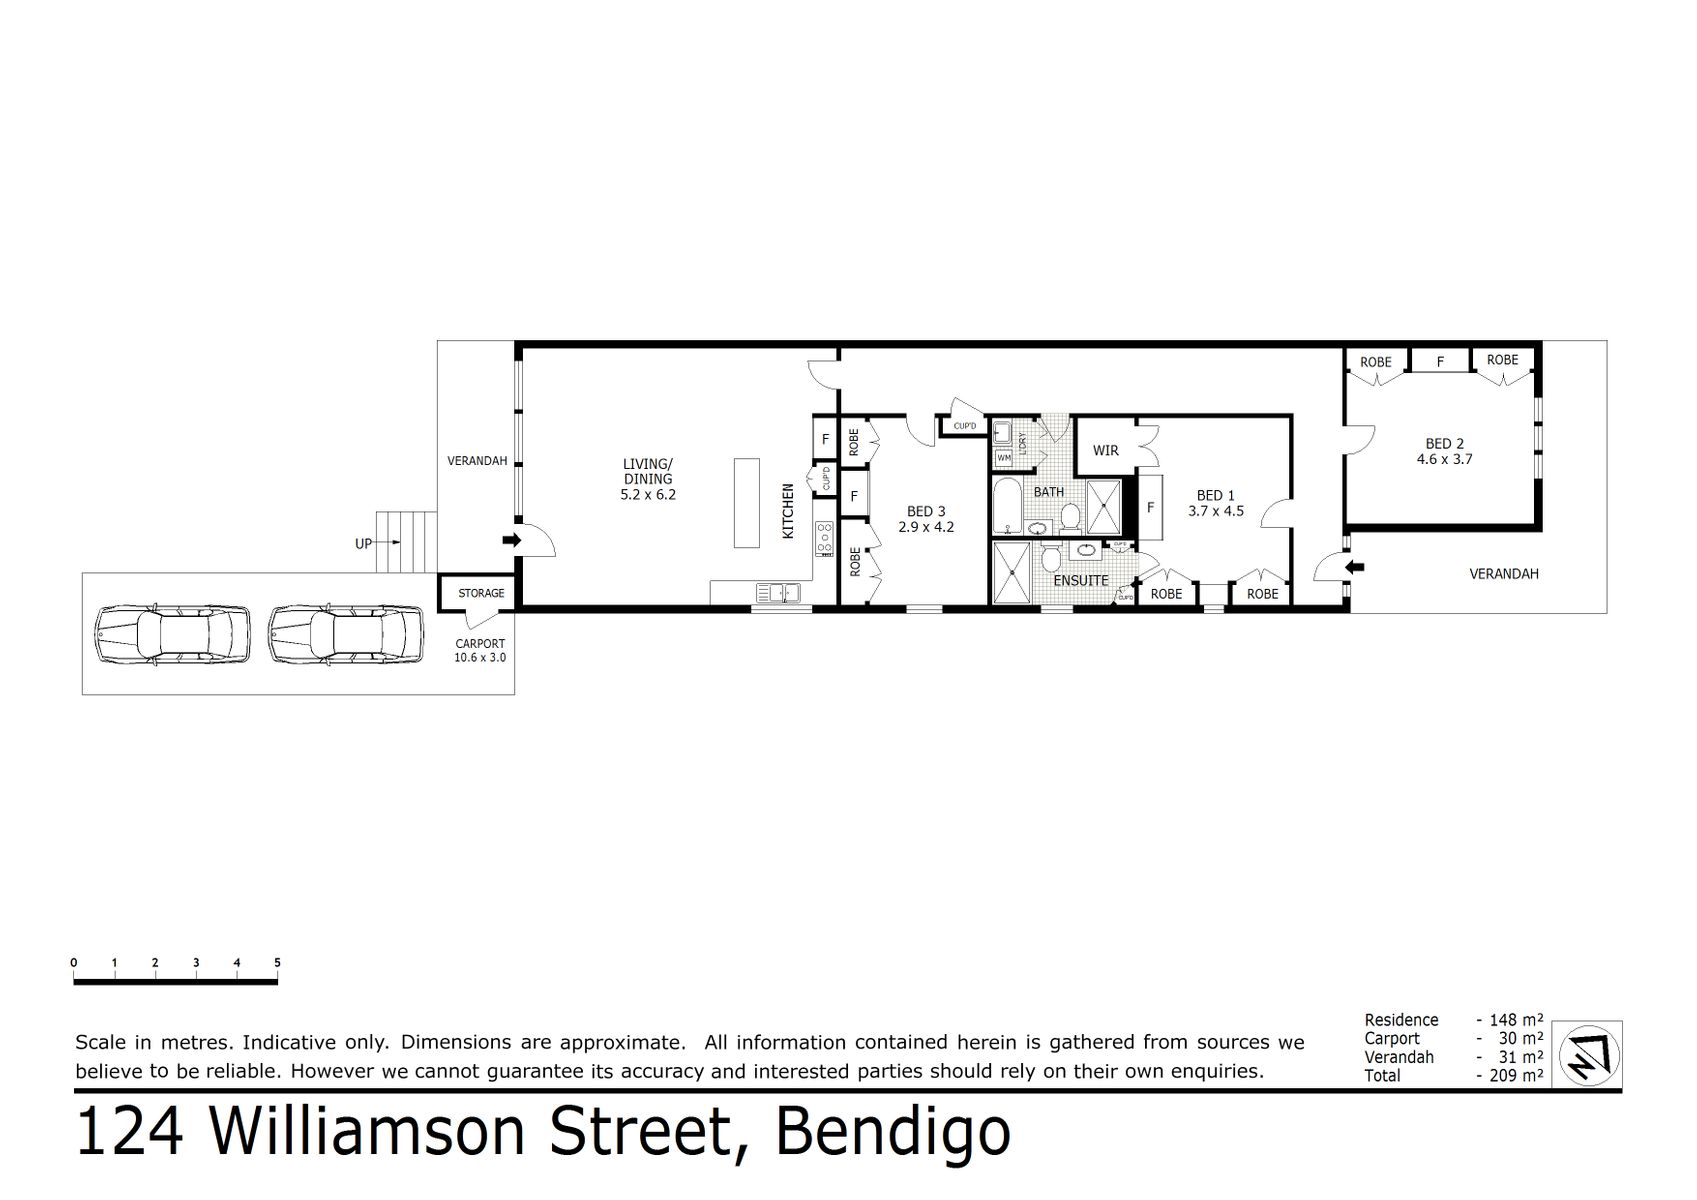 124 Williamson Street Bendigo (11 DEC 2019) 148sqm